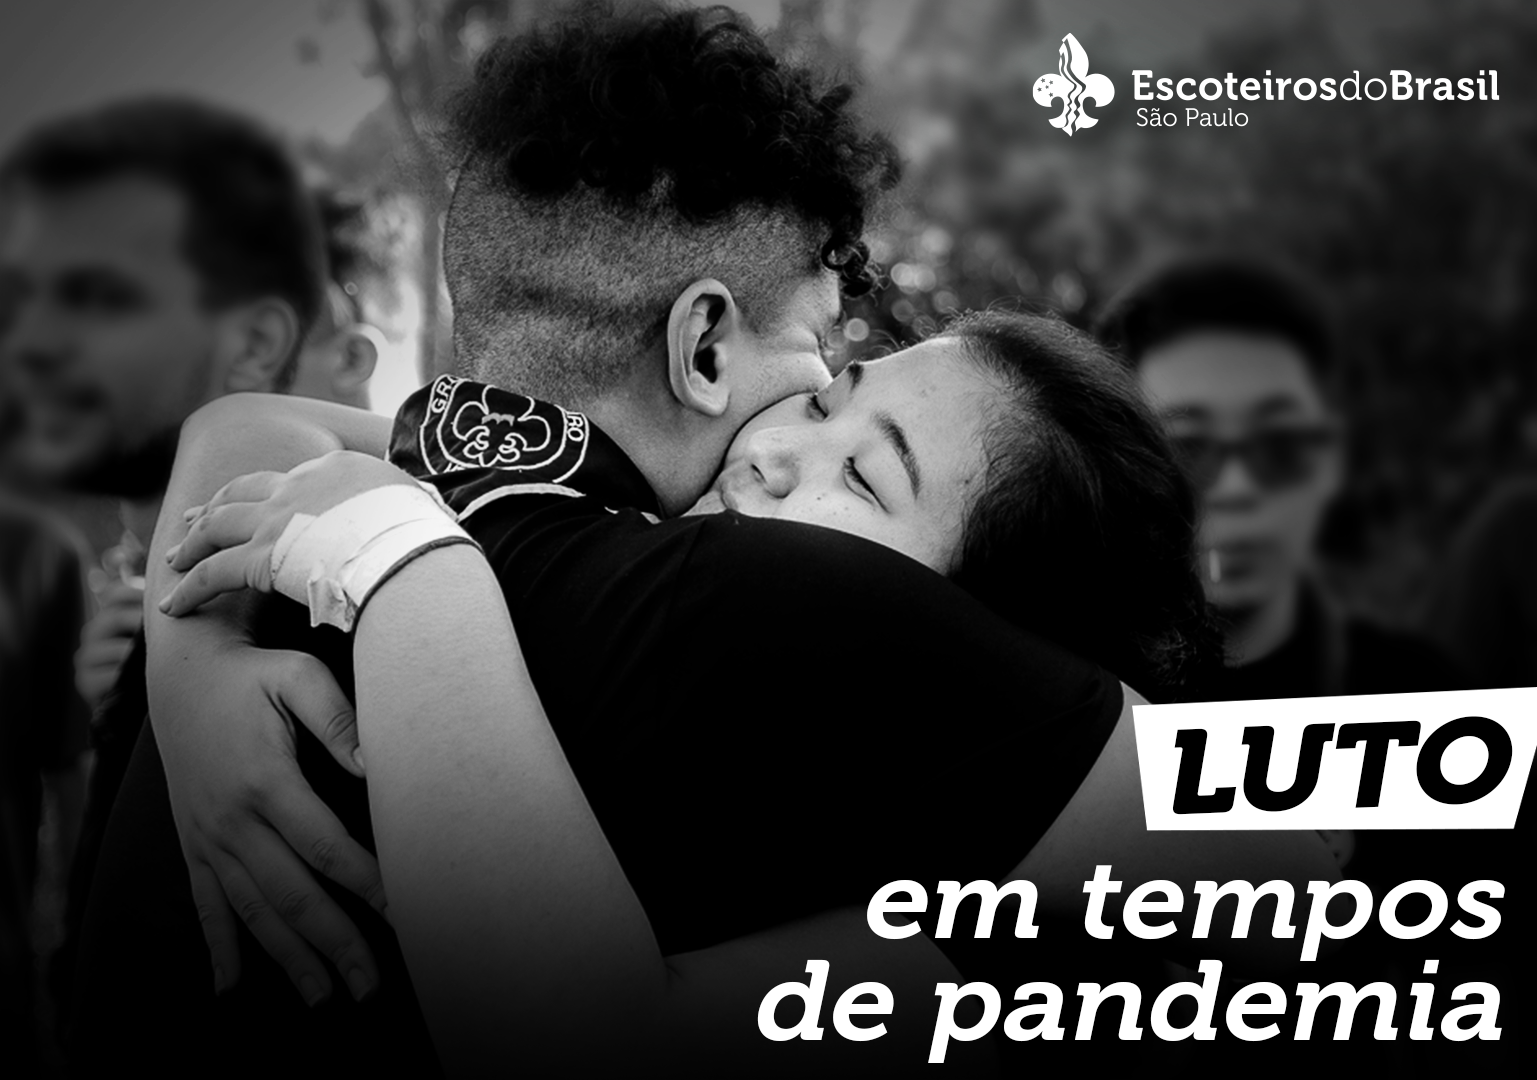 Foto em preto e branco de dois jovens escoteiros se abraçando. No canto superior direito o logo da Escoteiros do Brasil São Paulo e no canto inferior direito escrito "Luto em temos de pandemia".